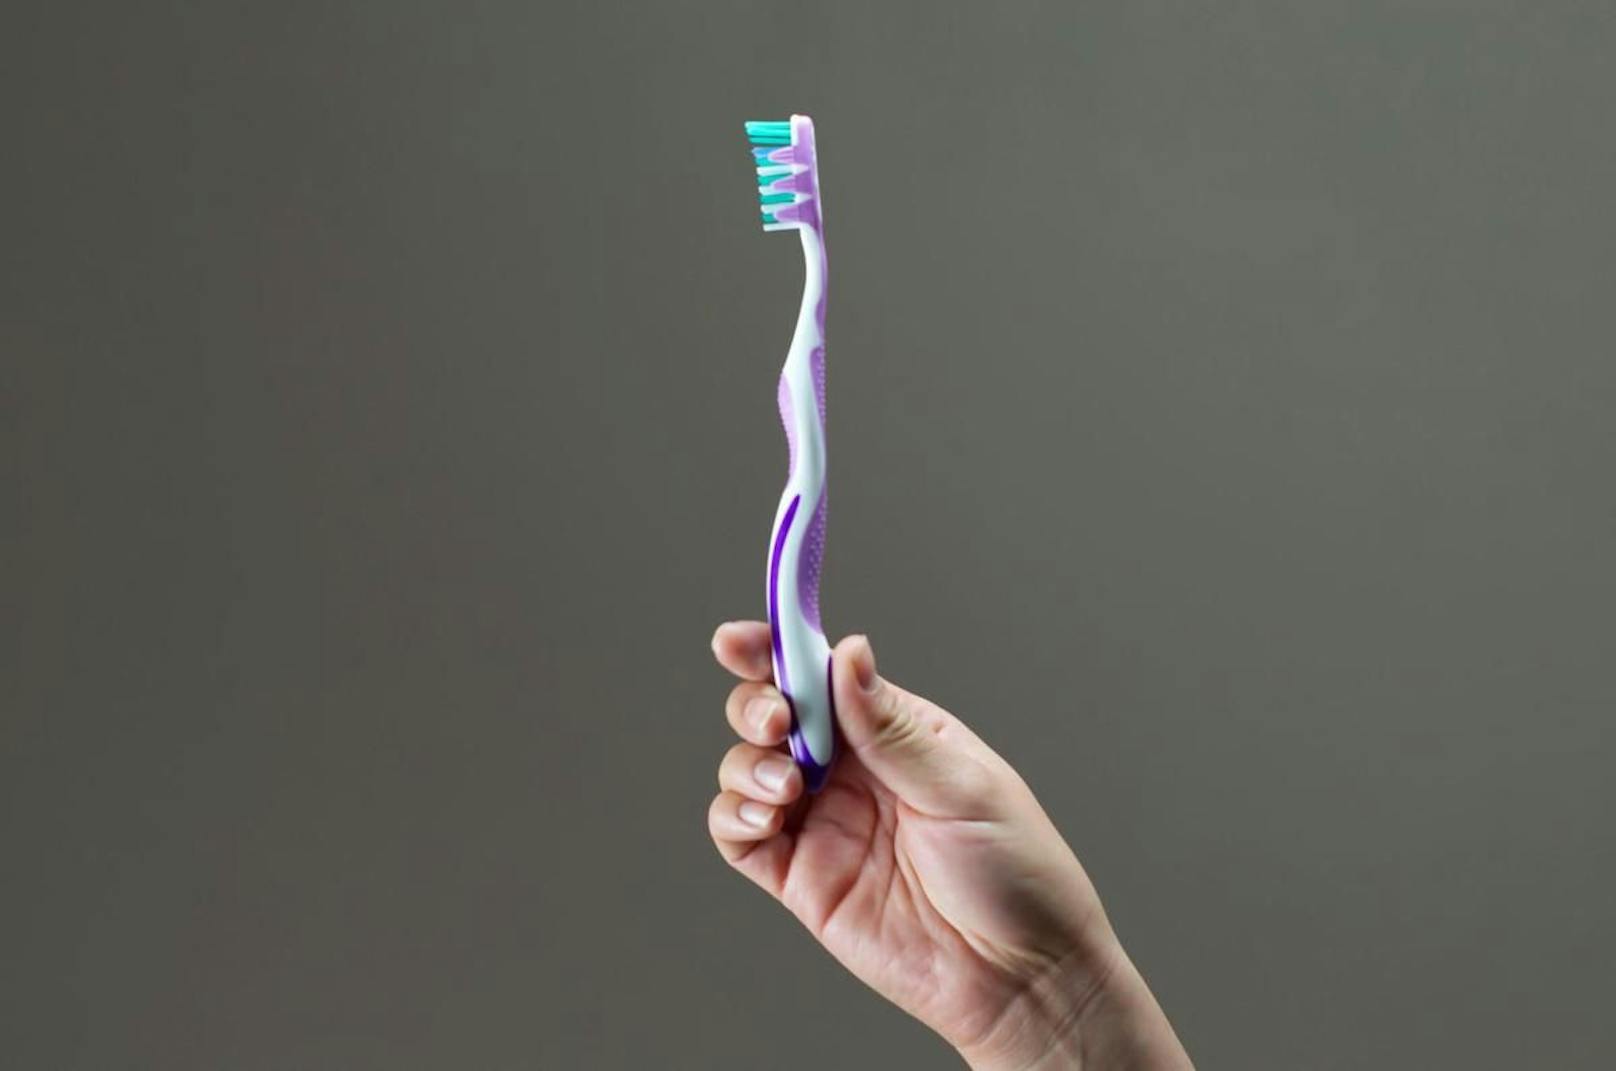 Eine Zahnbürste kann helfen, die Hörmuschel und Lautsprecher gründlich zu putzen.